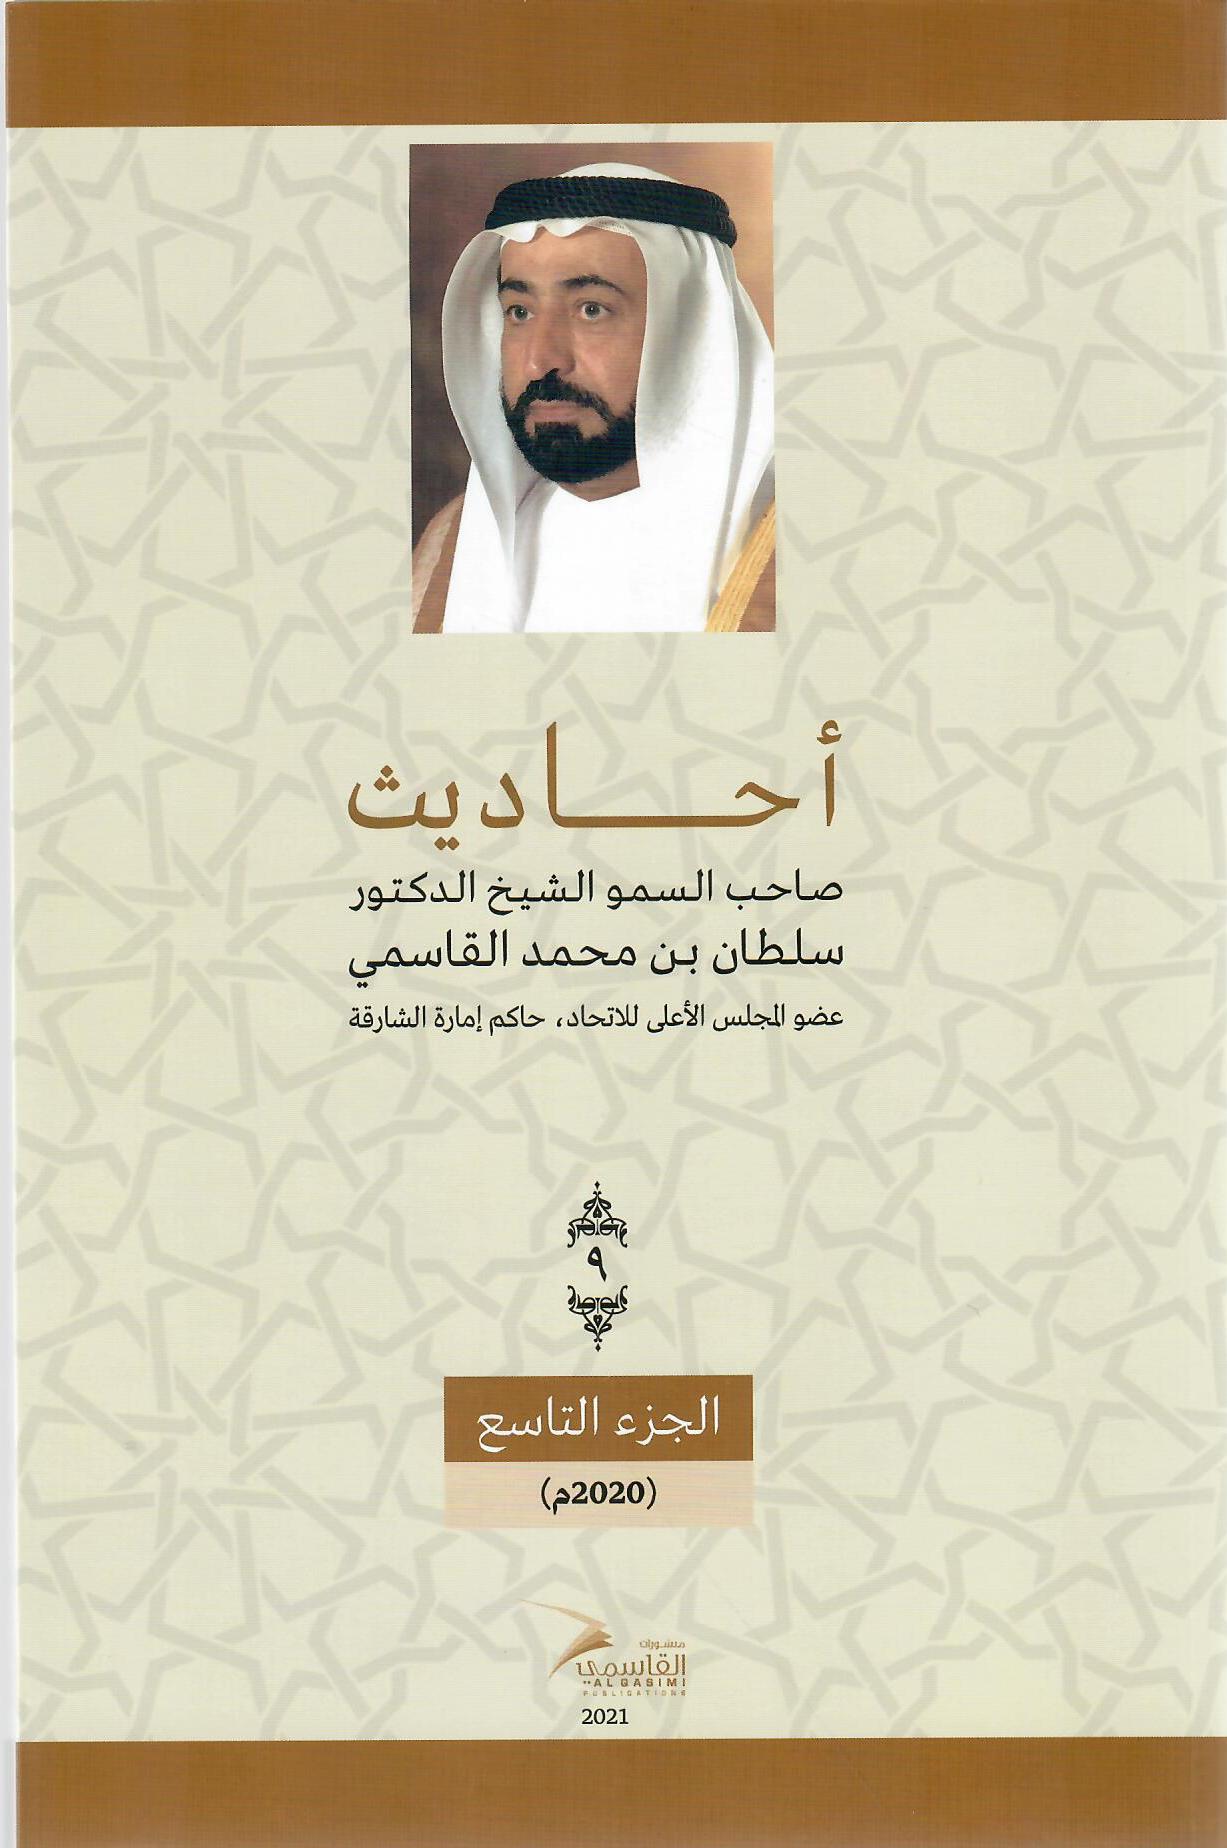 أحاديث صاحب السمو الشيخ الدكتور سلطان بن محمد القاسمي عضو المجلس الأعلى حاكم الشارقة ( 1972م - 2018م) الجزء التاسع